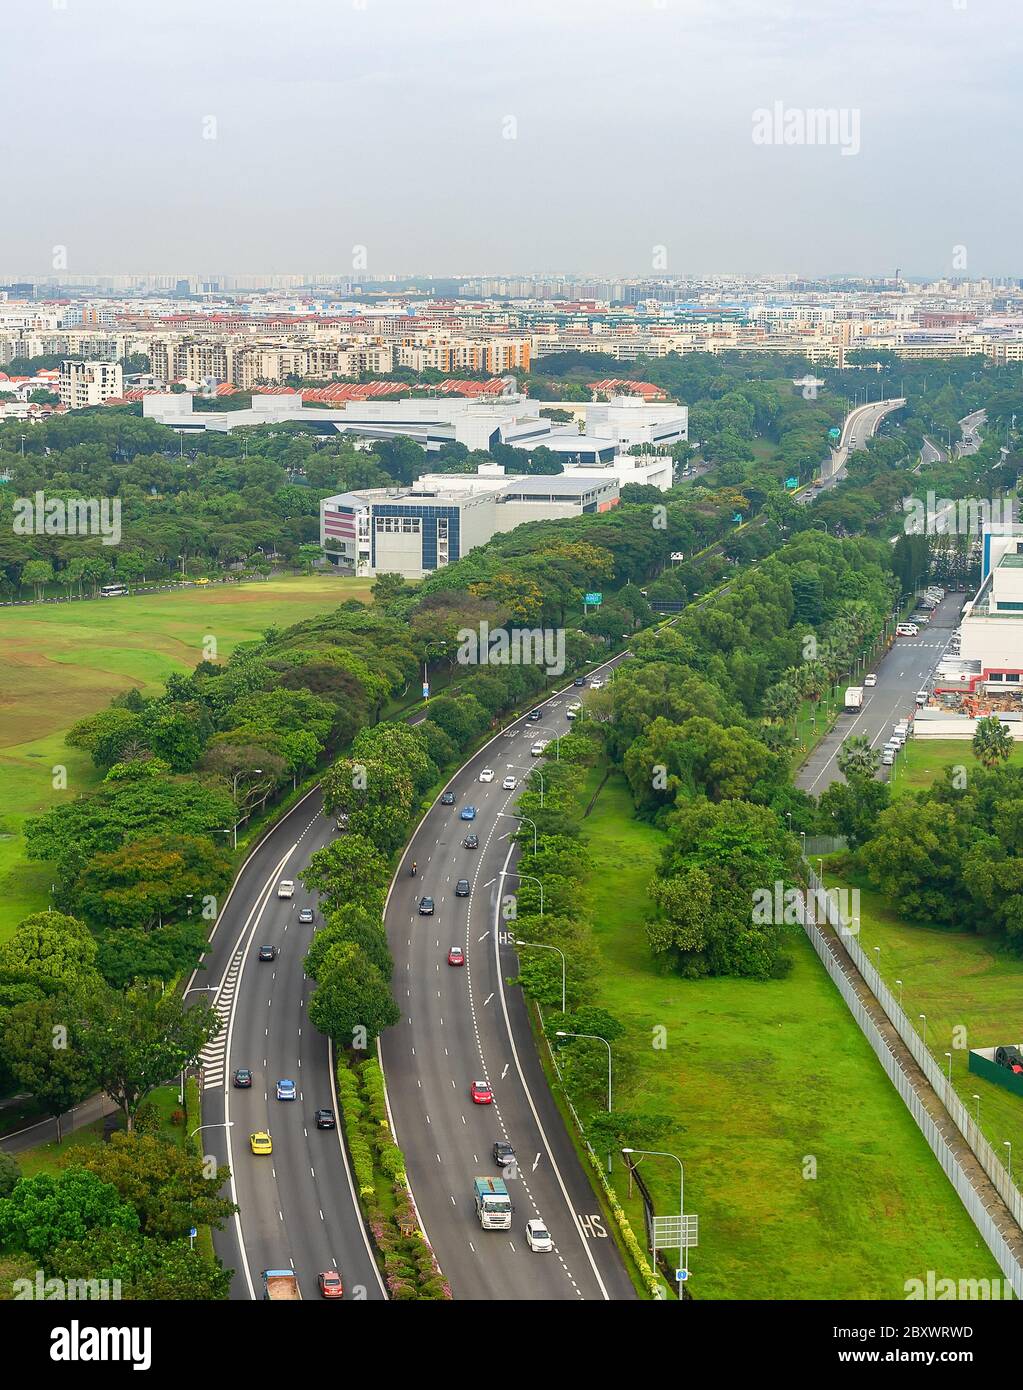 Luftaufnahme von Singapur mit PKW-Verkehr auf der Autobahn, grüne Landschaft mit modernen Stadtbild im Hintergrund Stockfoto